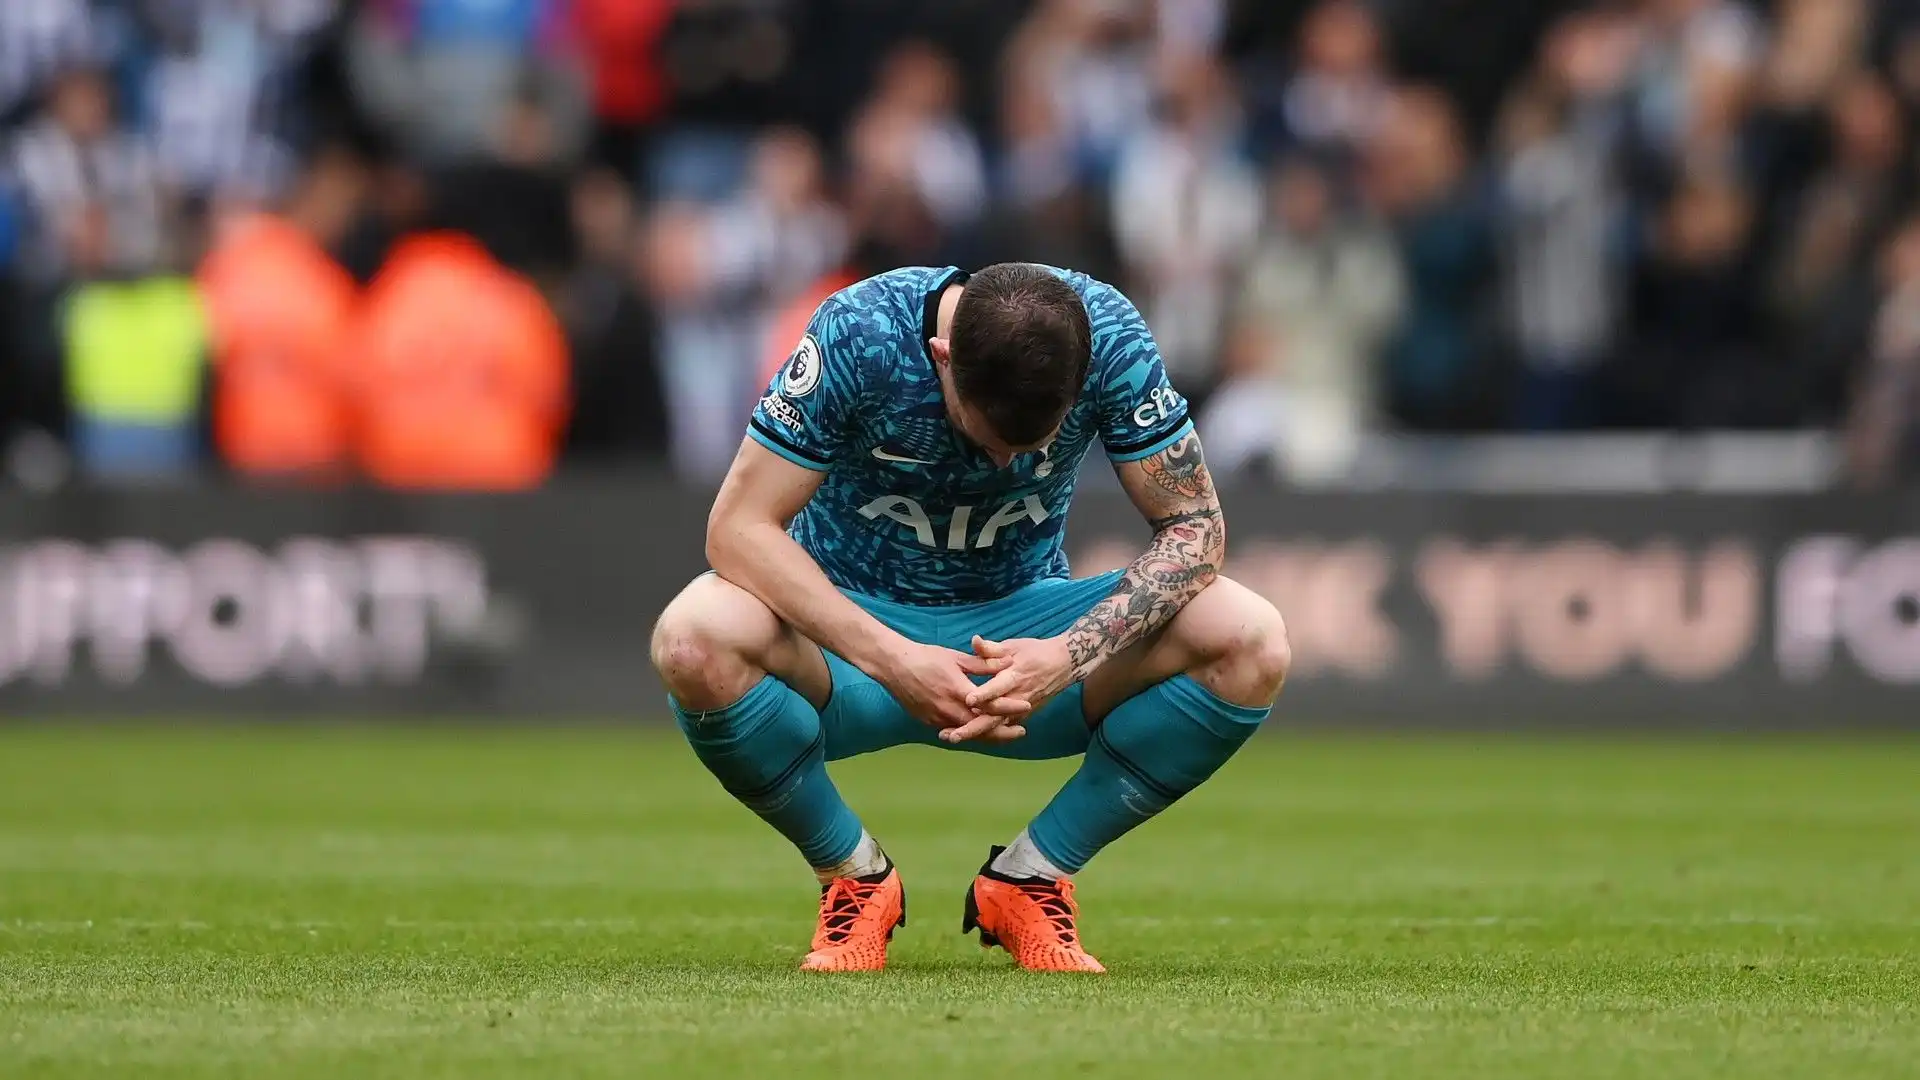 Al termine della sfida i calciatori del Tottenham erano molto delusi. Ovviamente